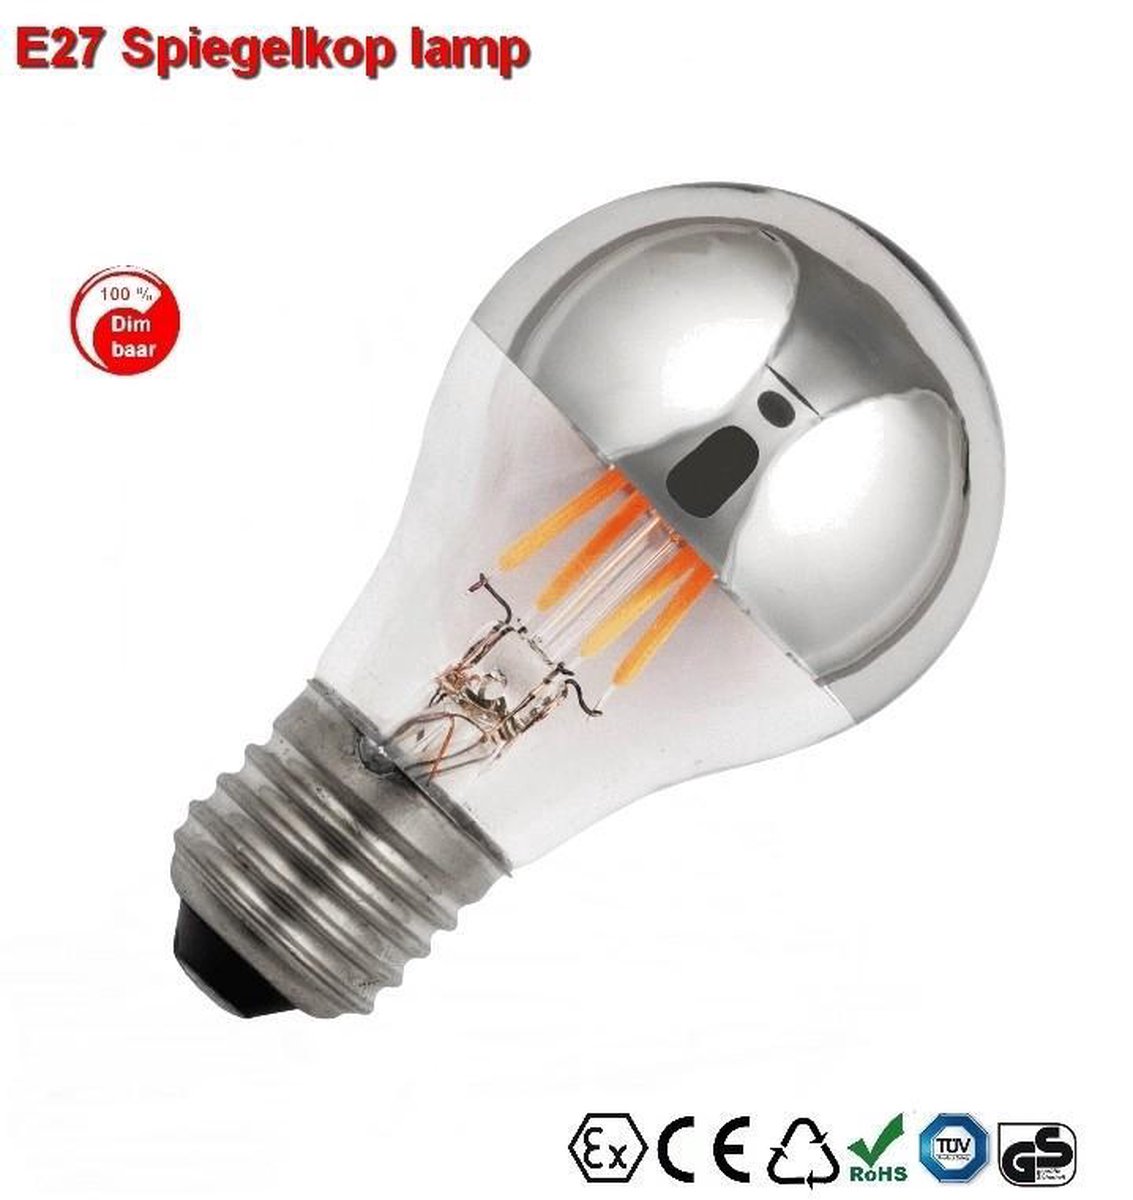 E27 Vintage Spiegelkop Led lamp 3,5w Warmwit Dimbaar | bol.com